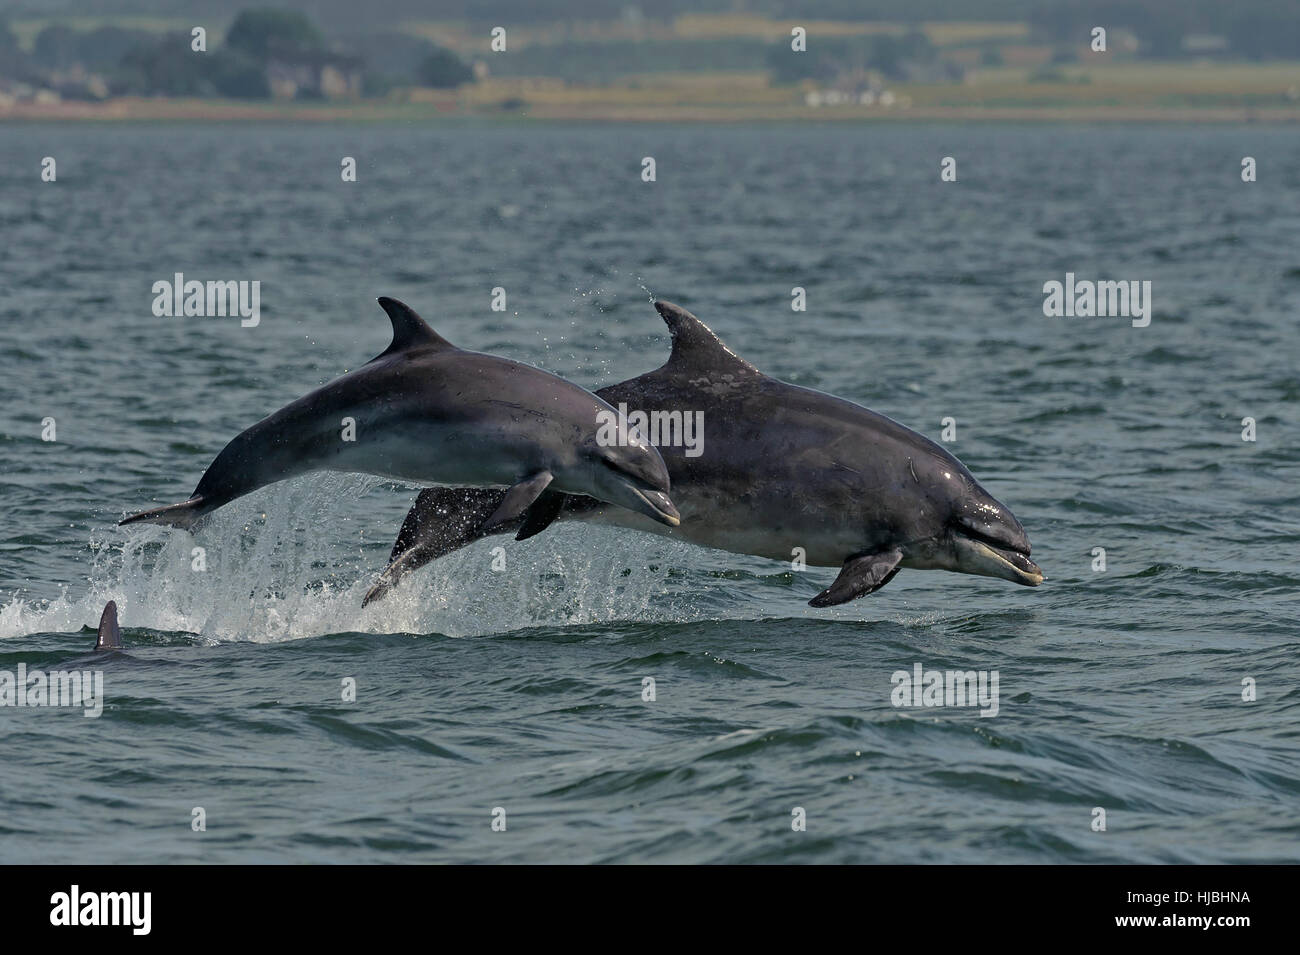 Delfines nariz de botella (Tursiops truncatus) adulto y quebrantar la pantorrilla. Moray, Escocia. De julio de 2013. Foto de stock